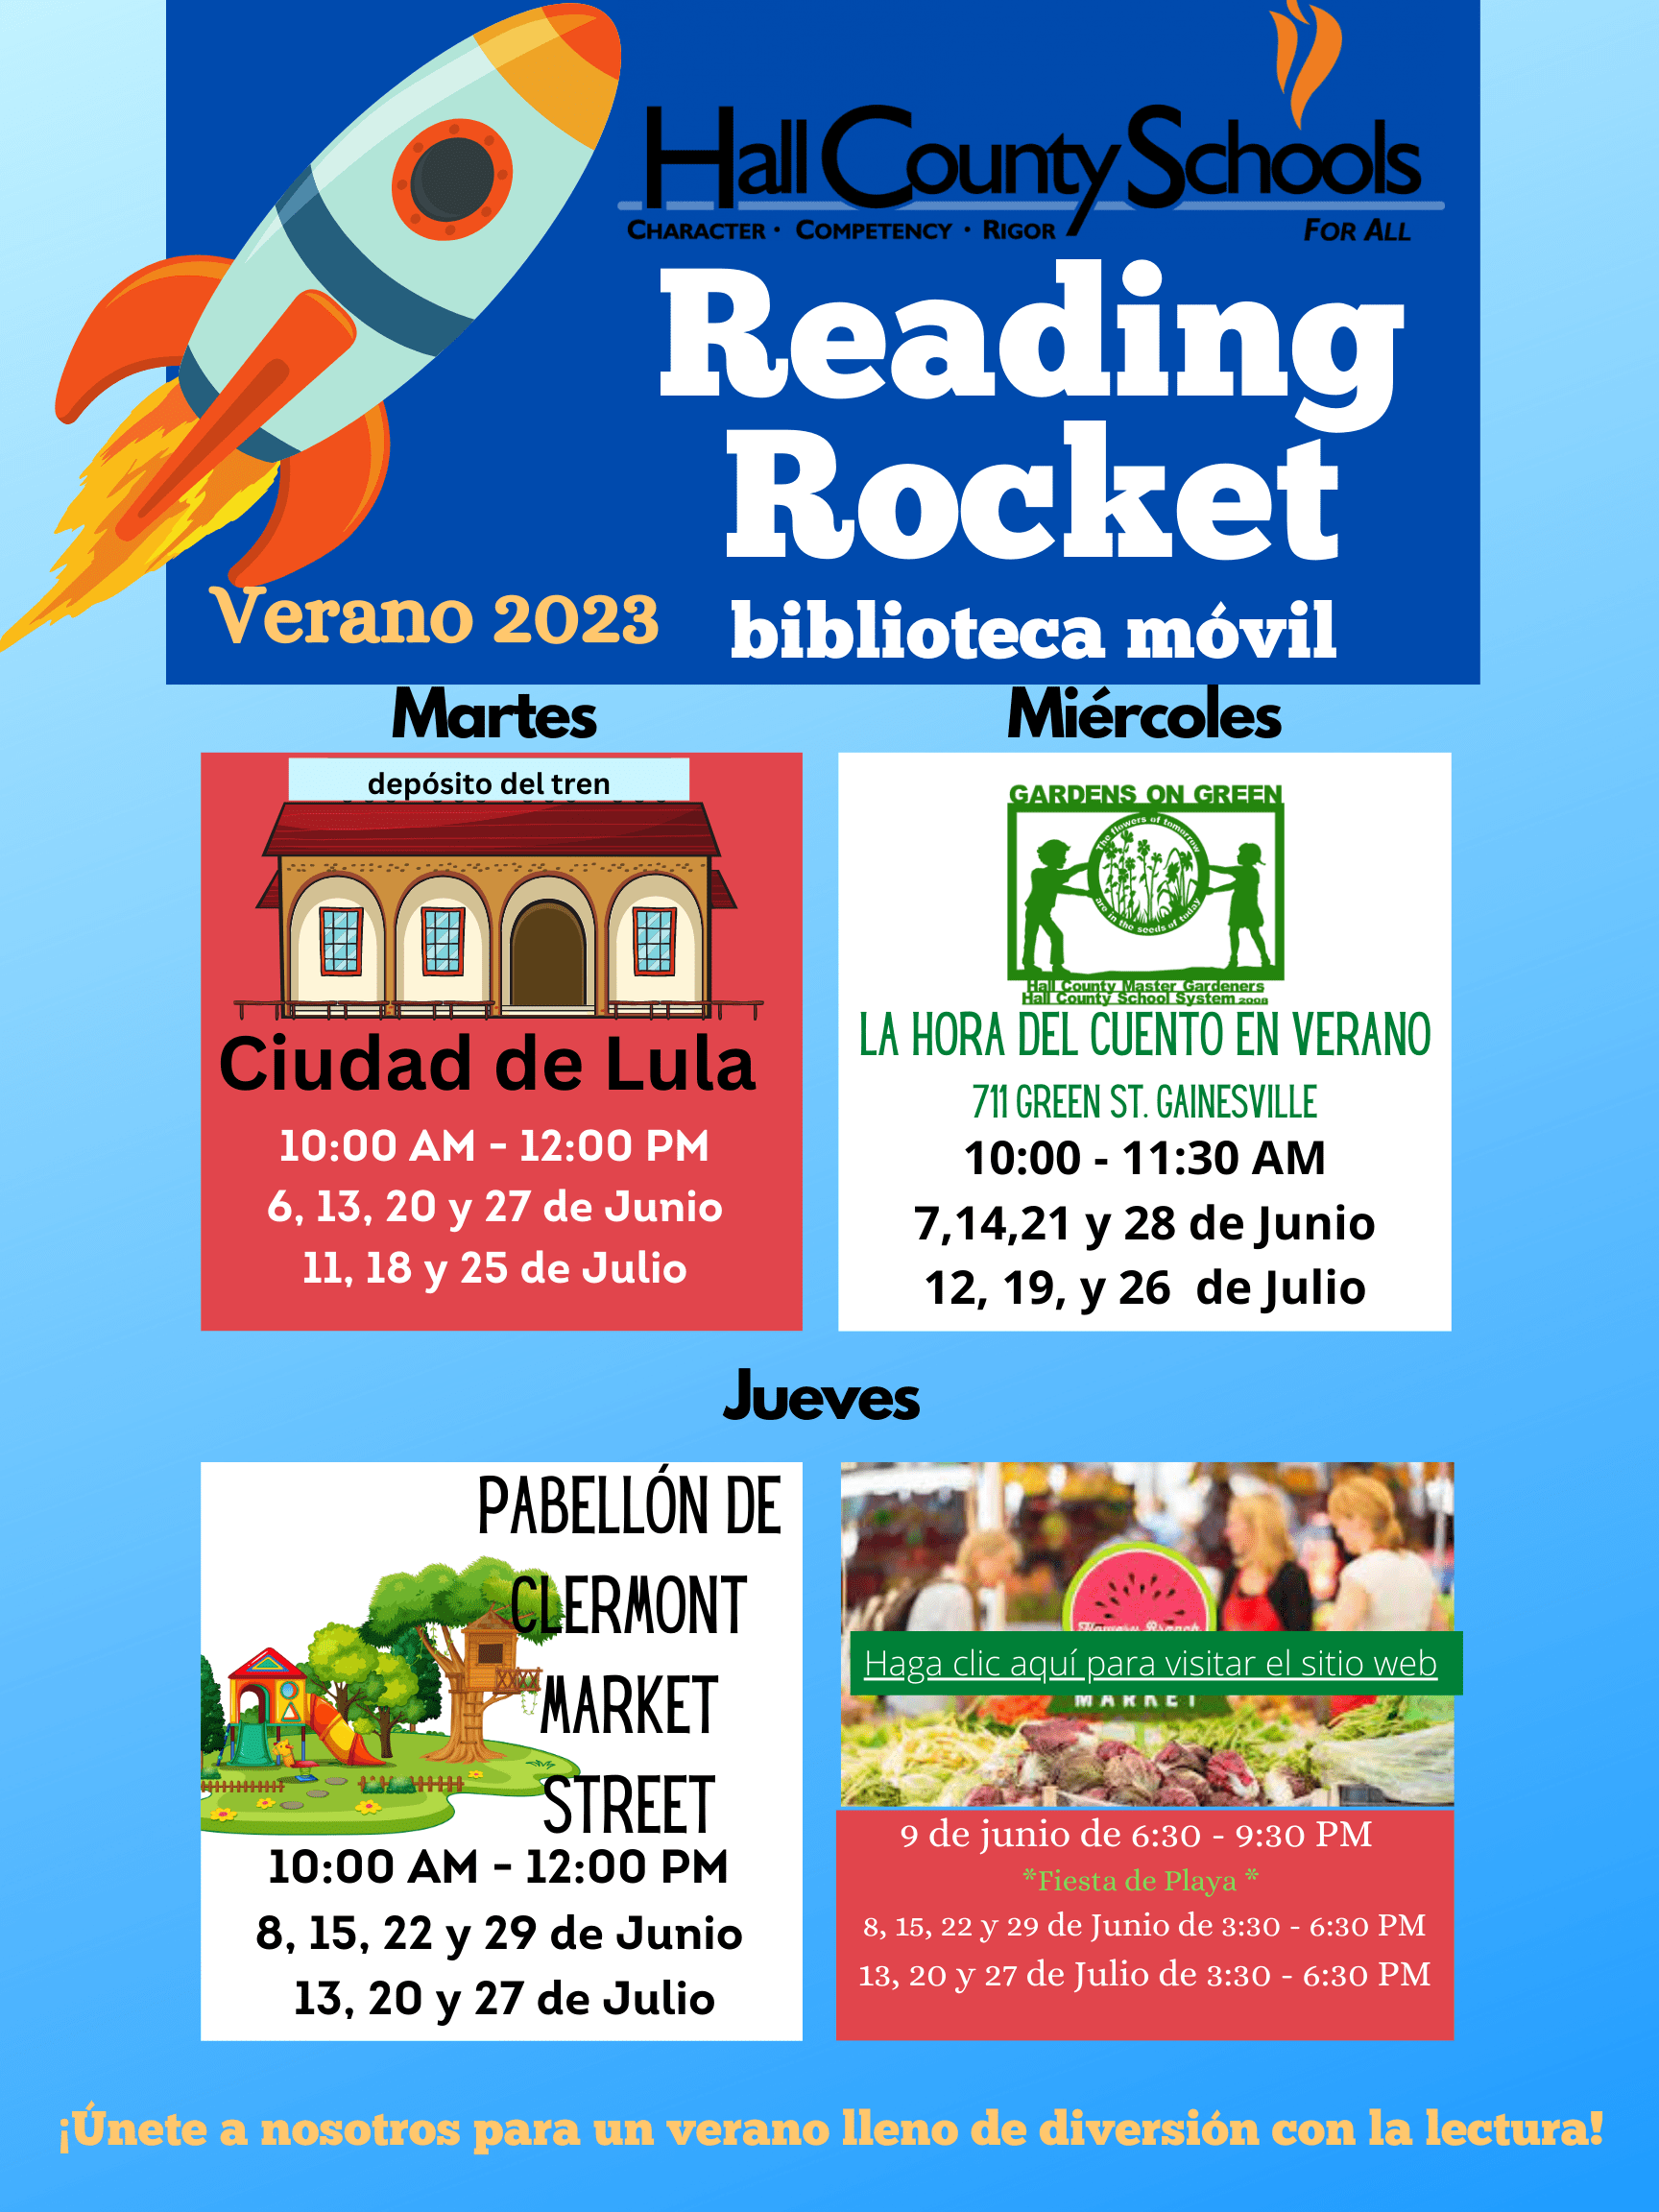 Lugares, fechas y horarios de Reading Rocket en español